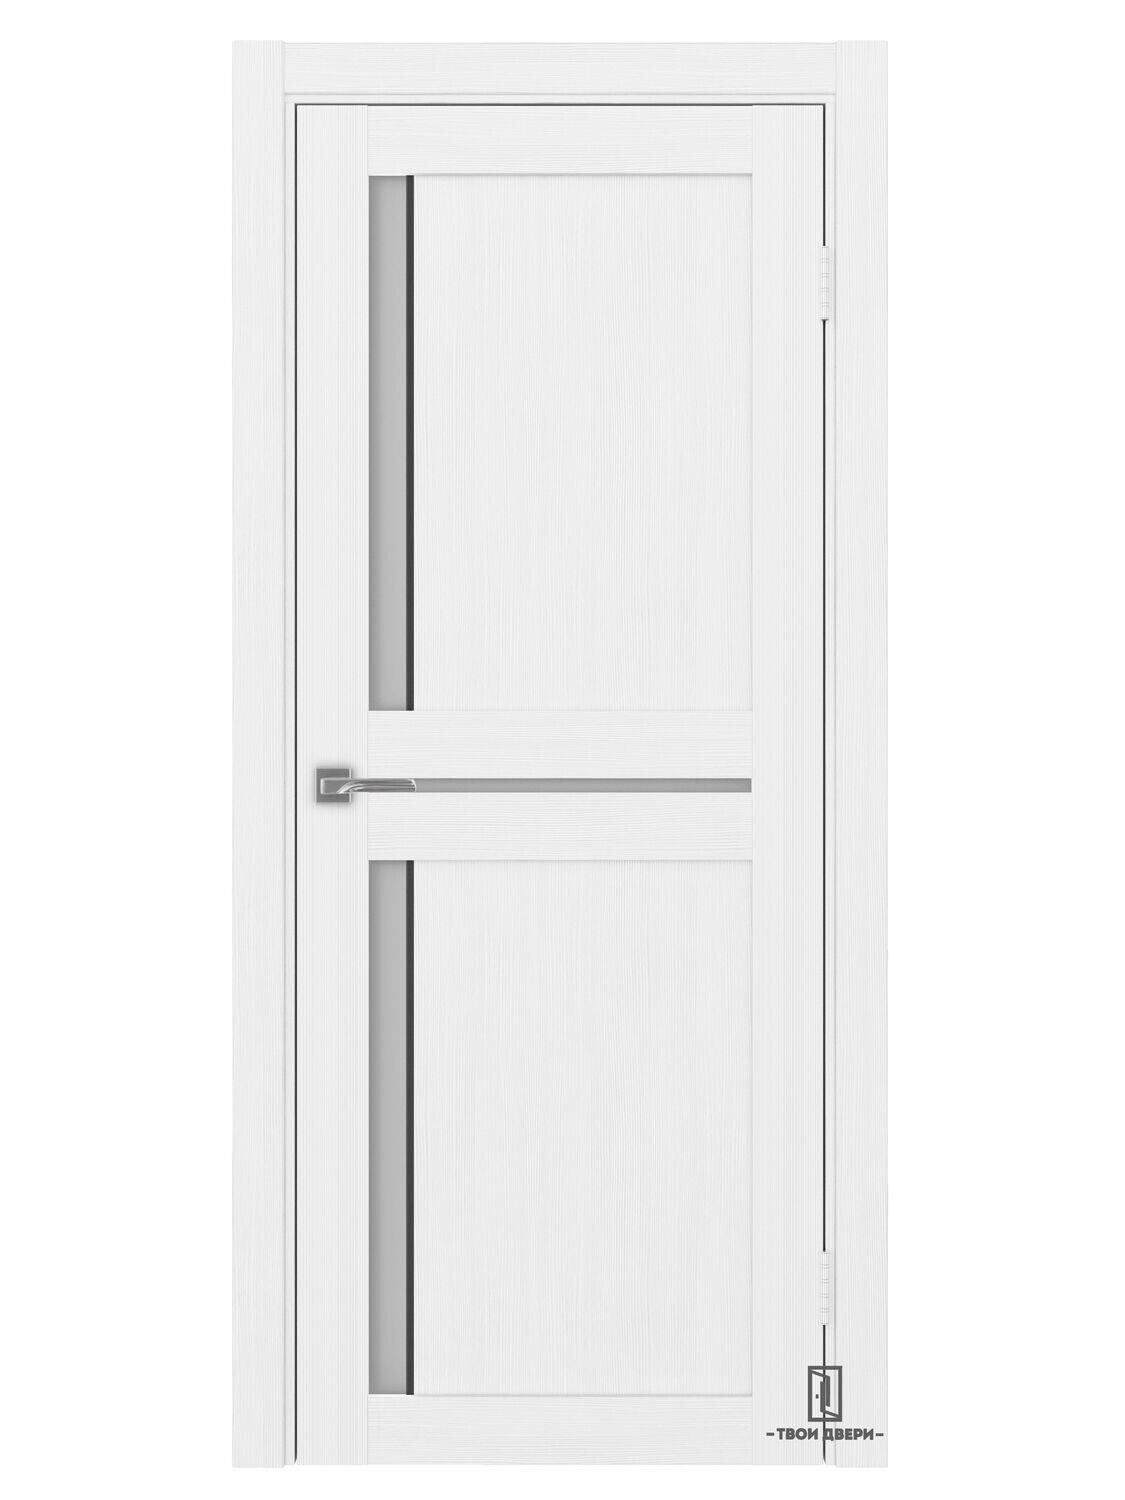 Дверь межкомнатная АПС 523.221 (черные молдинги), белый лед